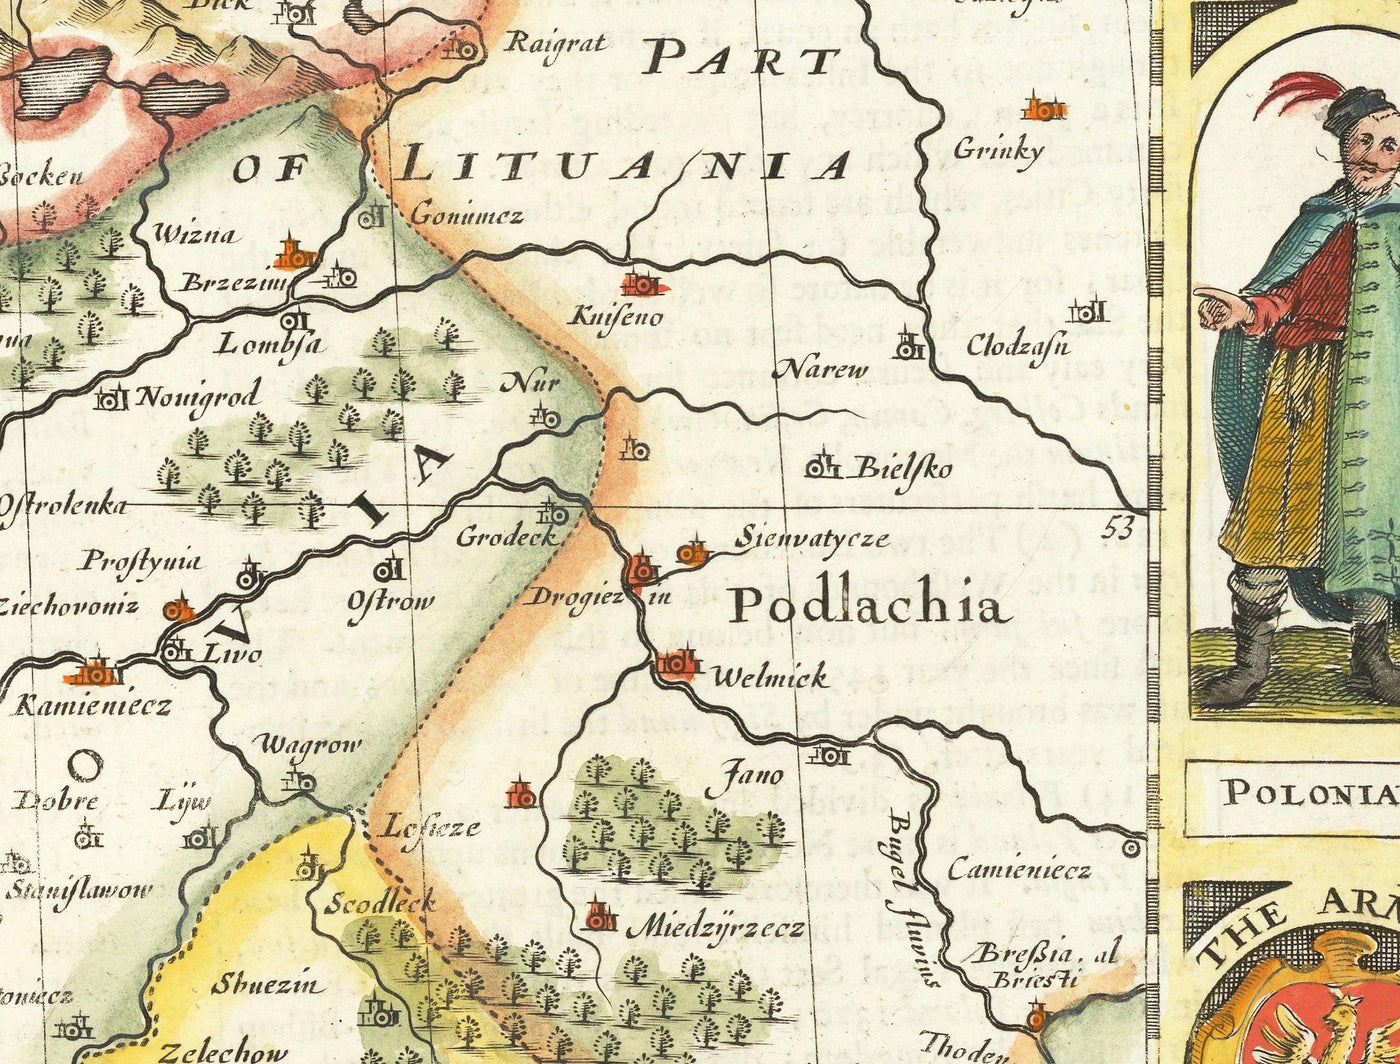 Seltene alte Karte von Polen von John Speed, 1626 - Deutschland, Preußen, Litauen, Böhmen, Warschau